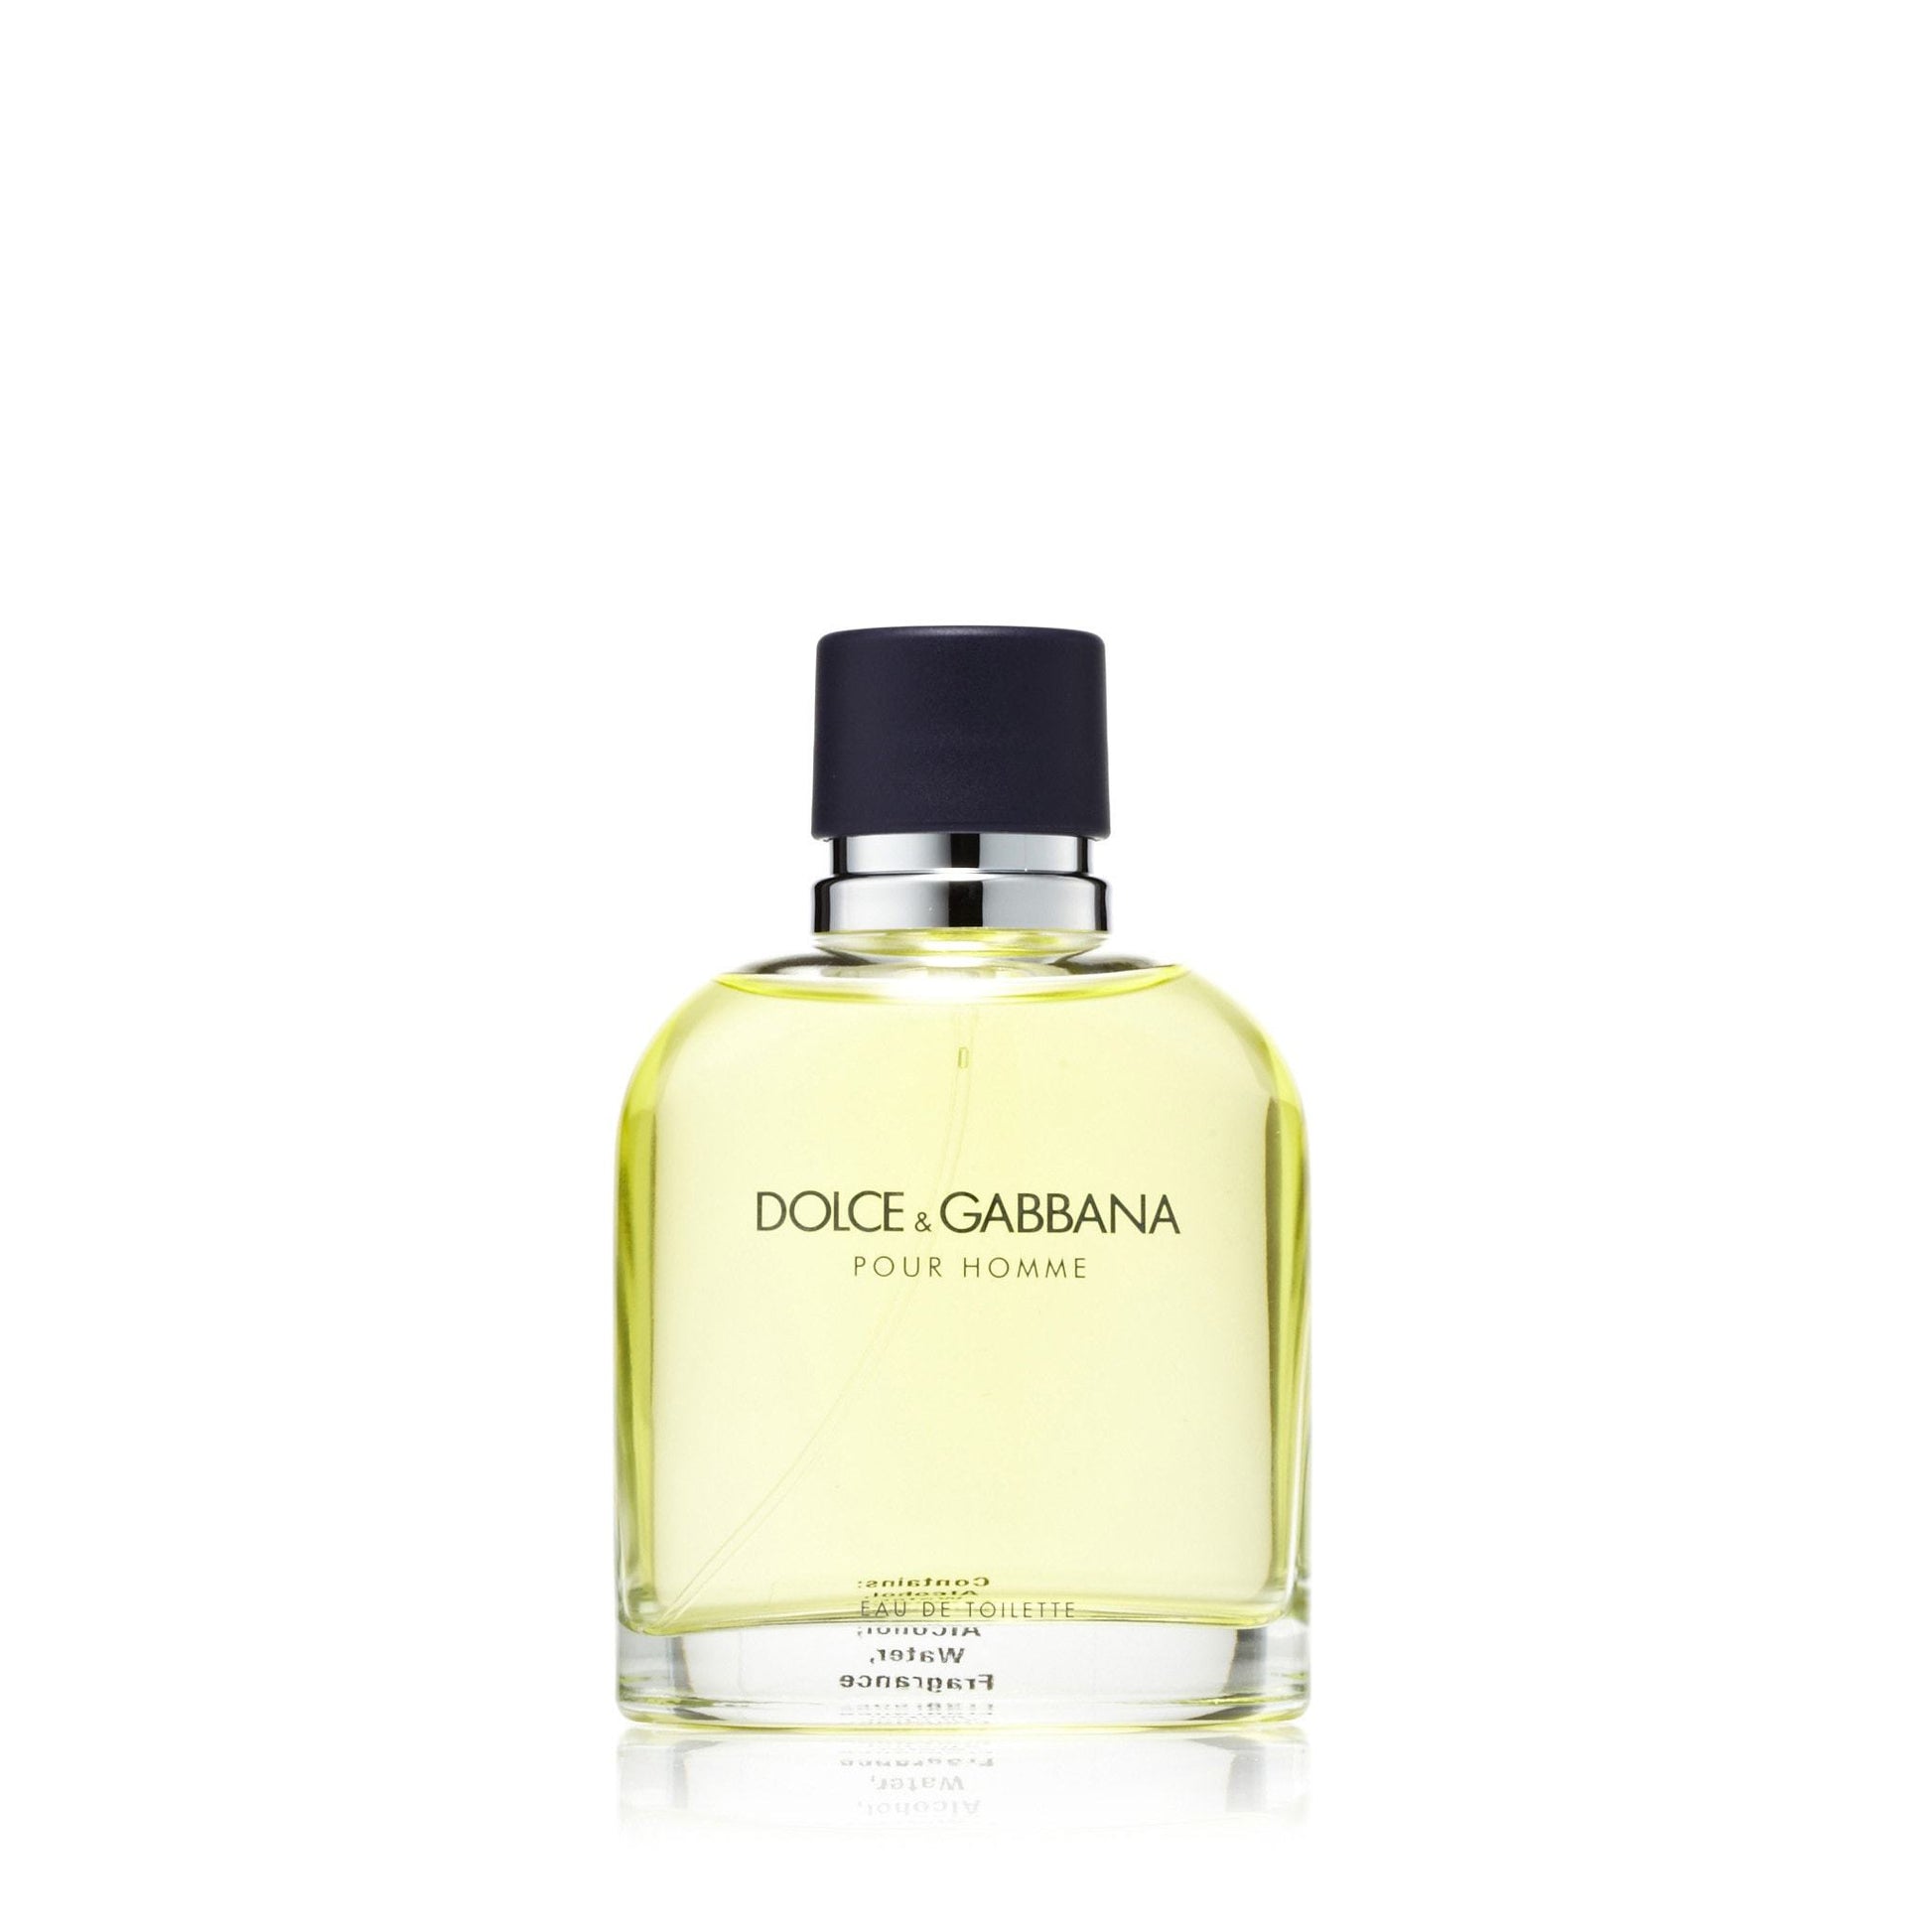 Dolce & Gabbana Eau de Toilette Spray for Men by D&G, Product image 4